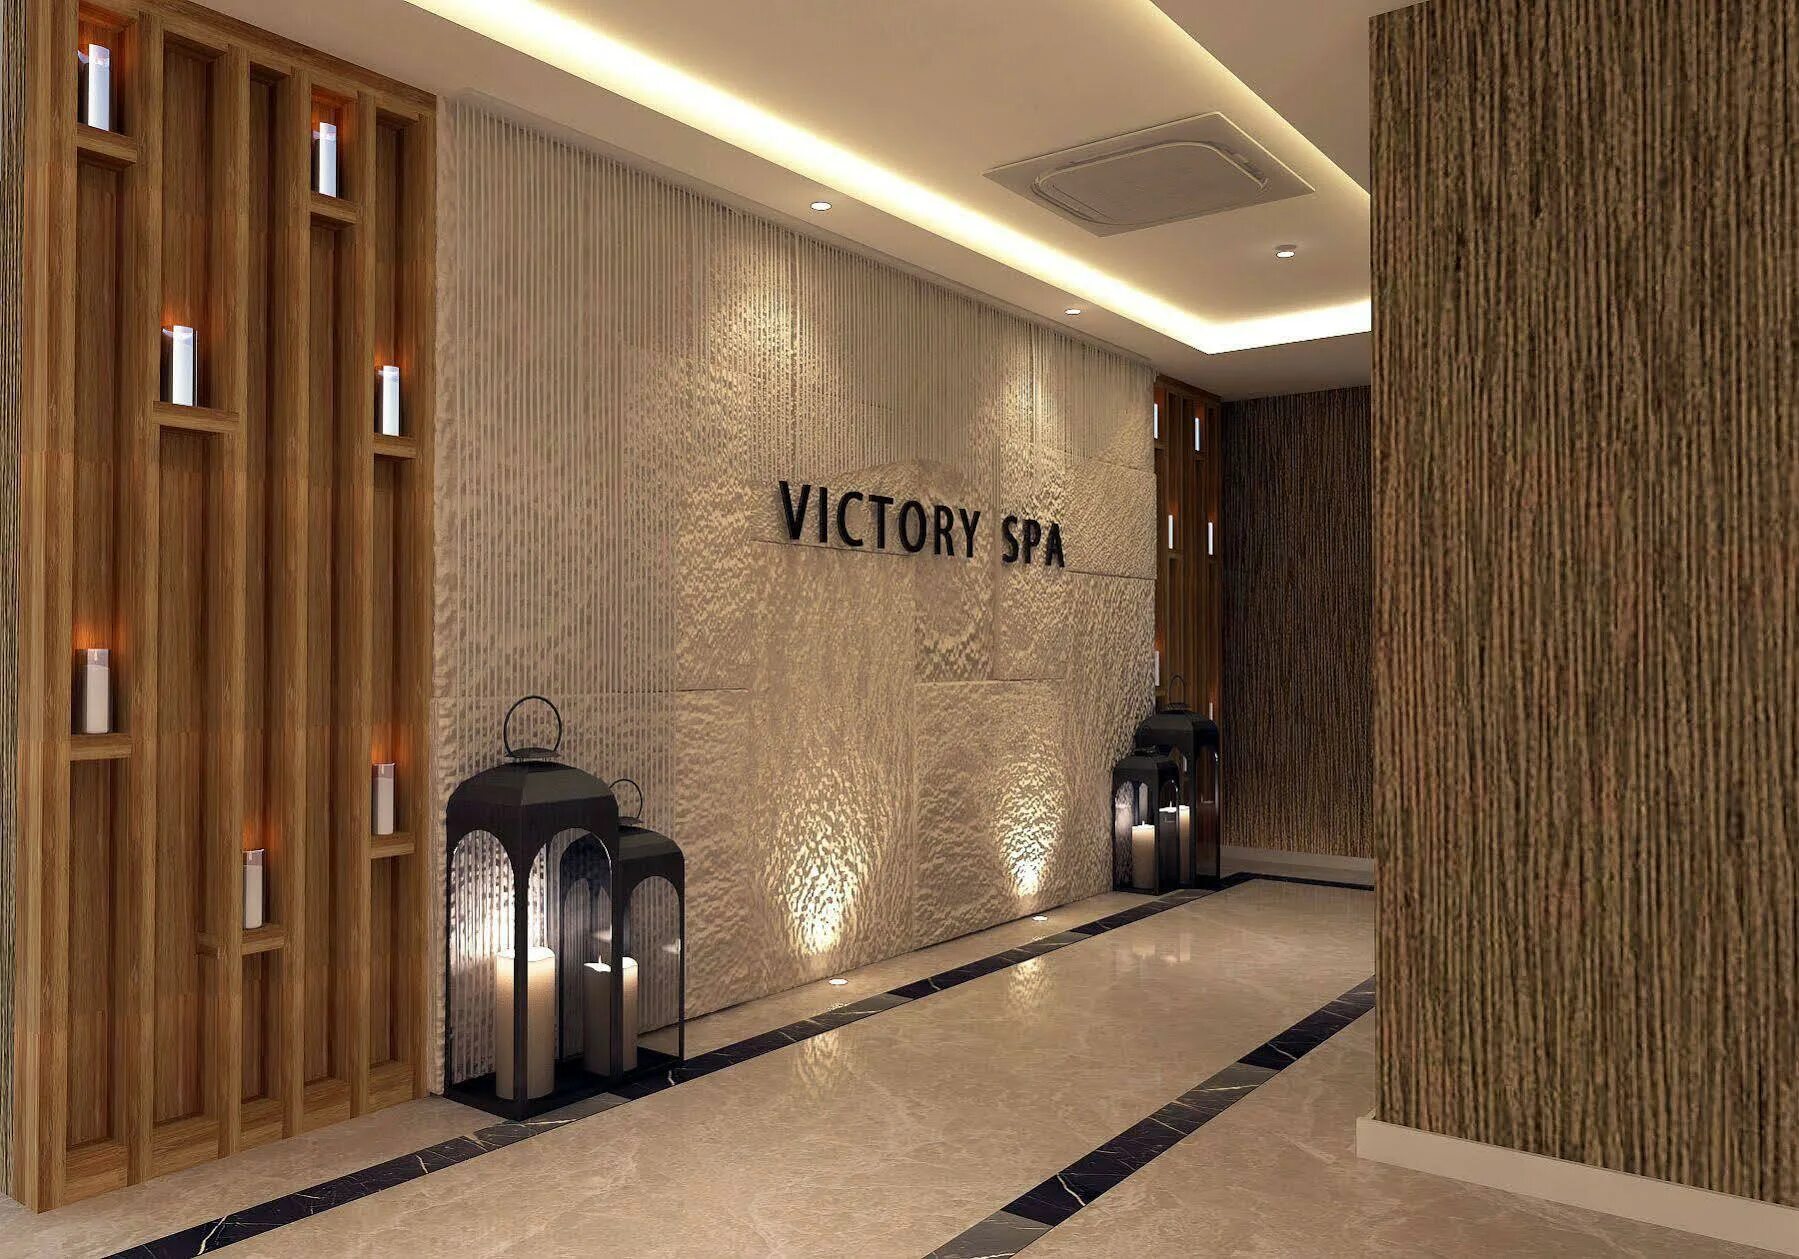 Виктори би майн. Виктори би майн Турция Сиде. Отель в Турции Victory be mine Hotel 5.